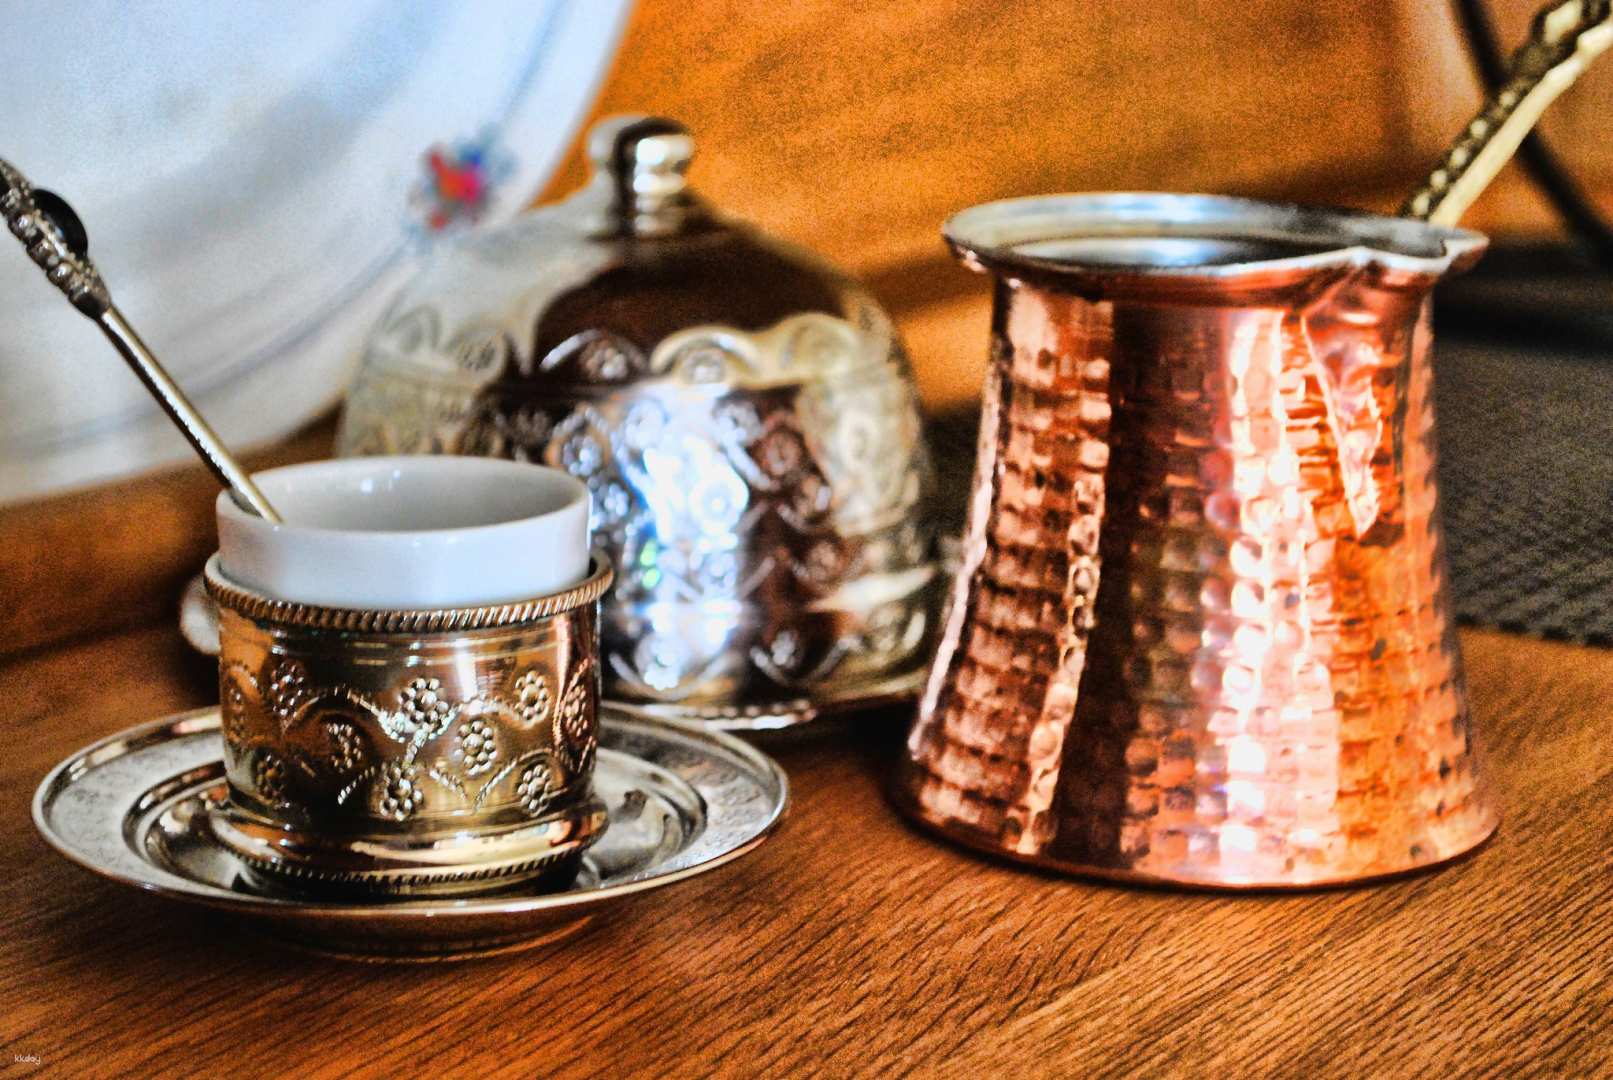 台北-土耳其沙煮咖啡工作坊體驗| Turkish Coffee Workshop